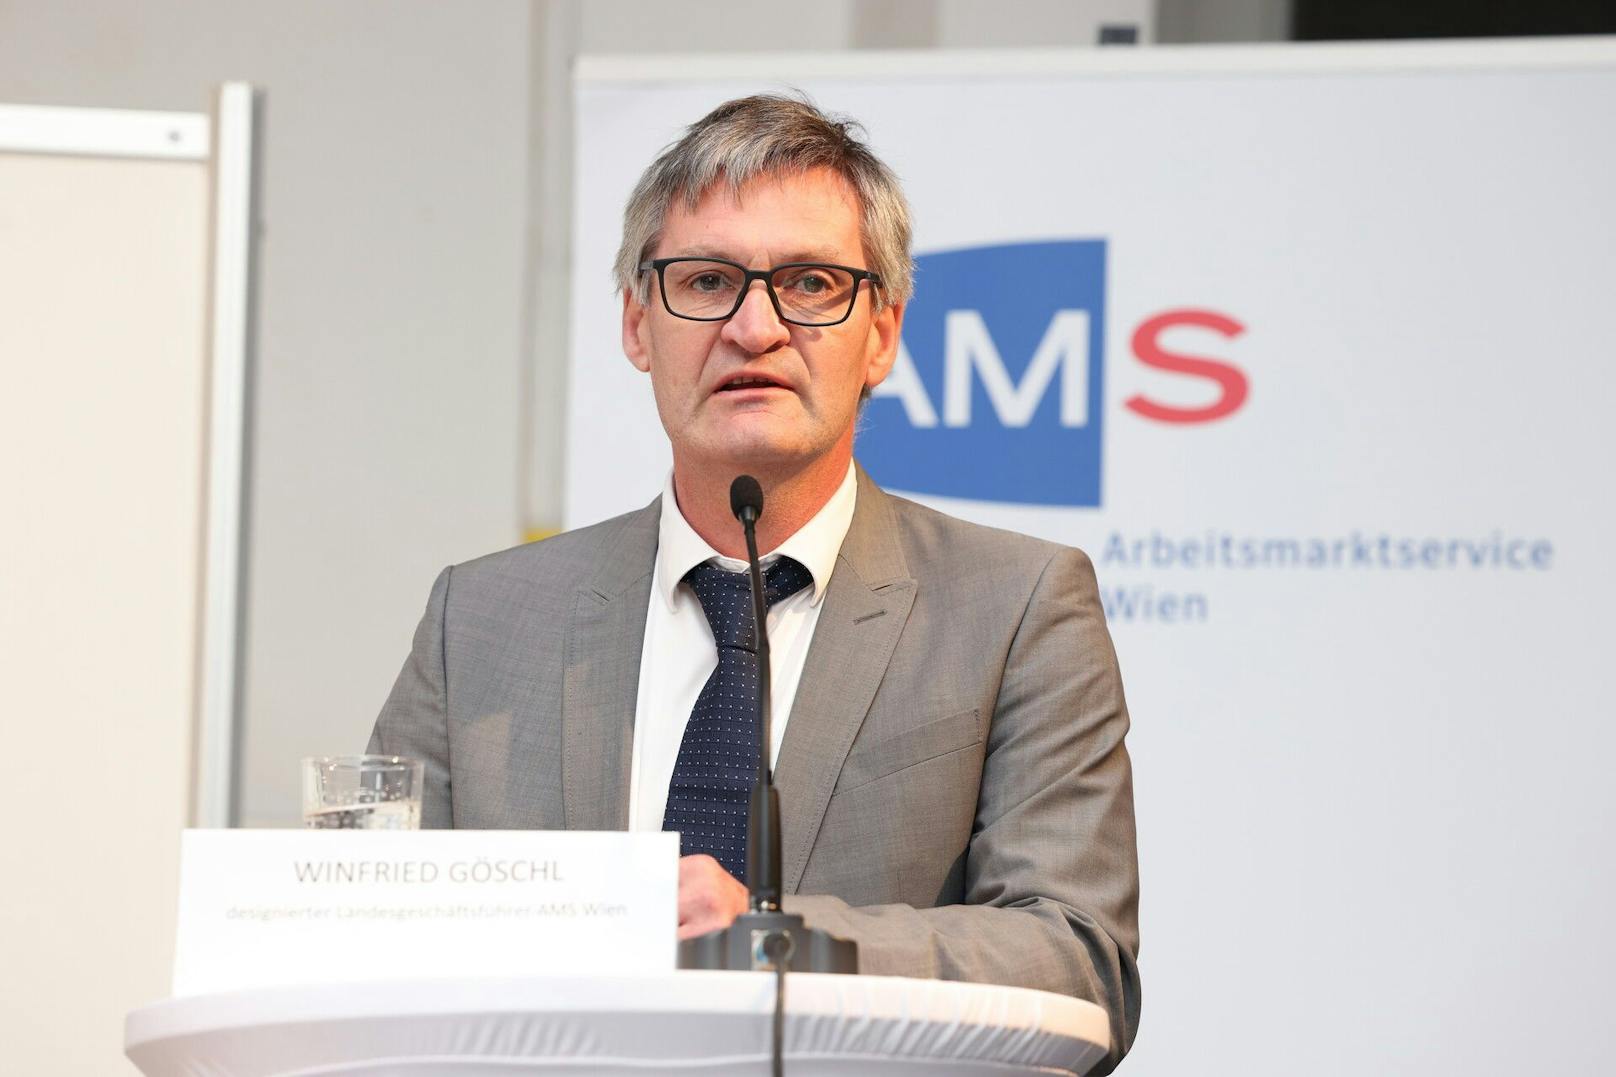 Der neue AMS-Wien-Chef Winfried Göschl.